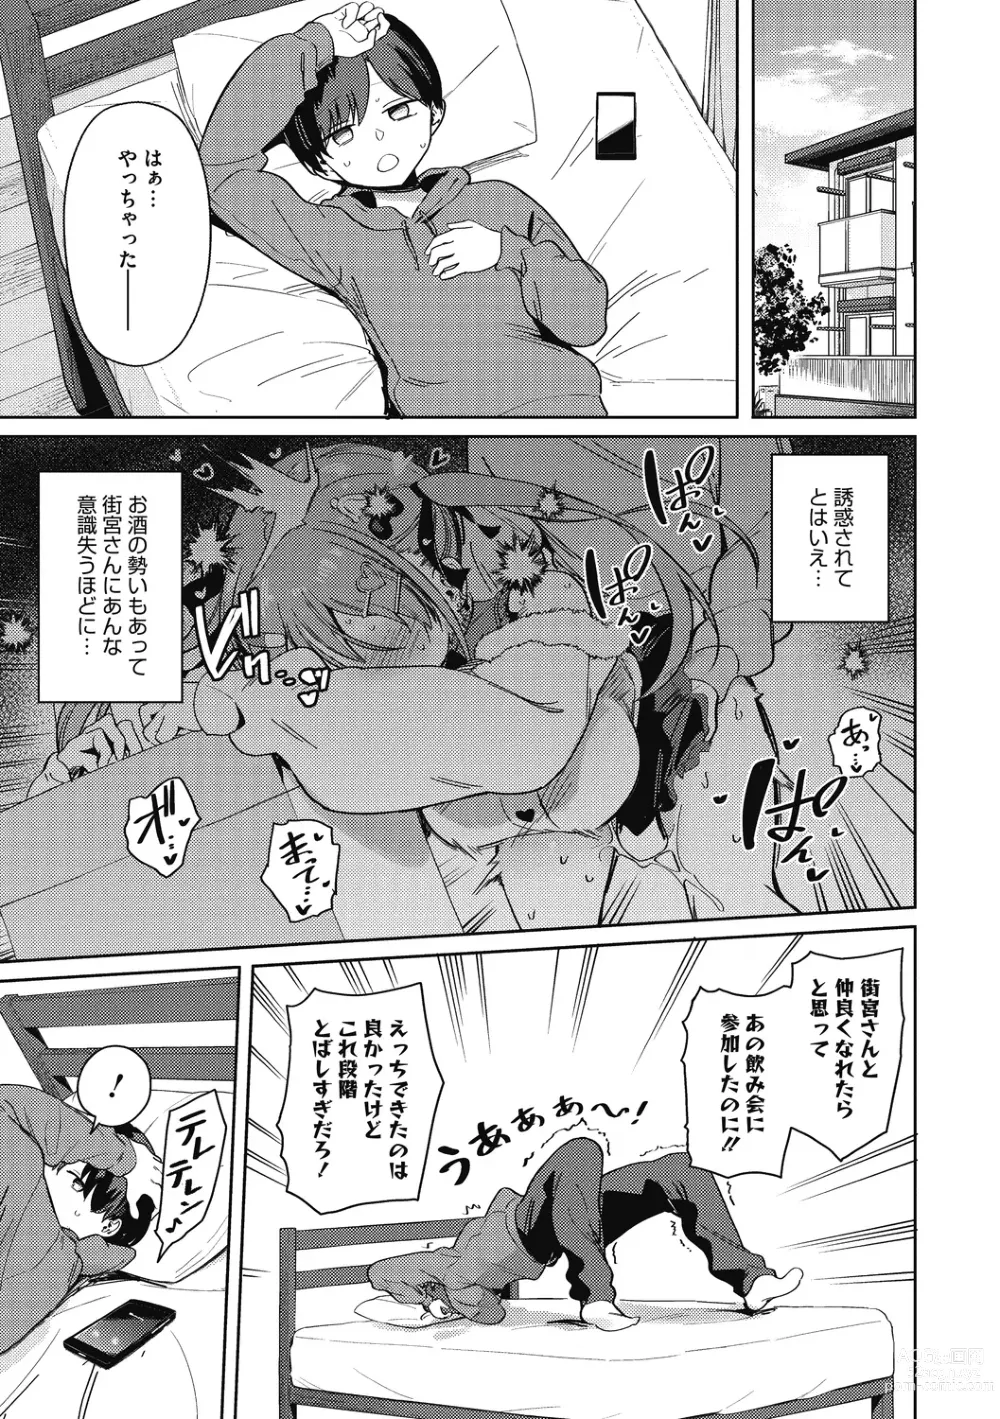 Page 9 of manga Kegasaretai-kei Kanojo.